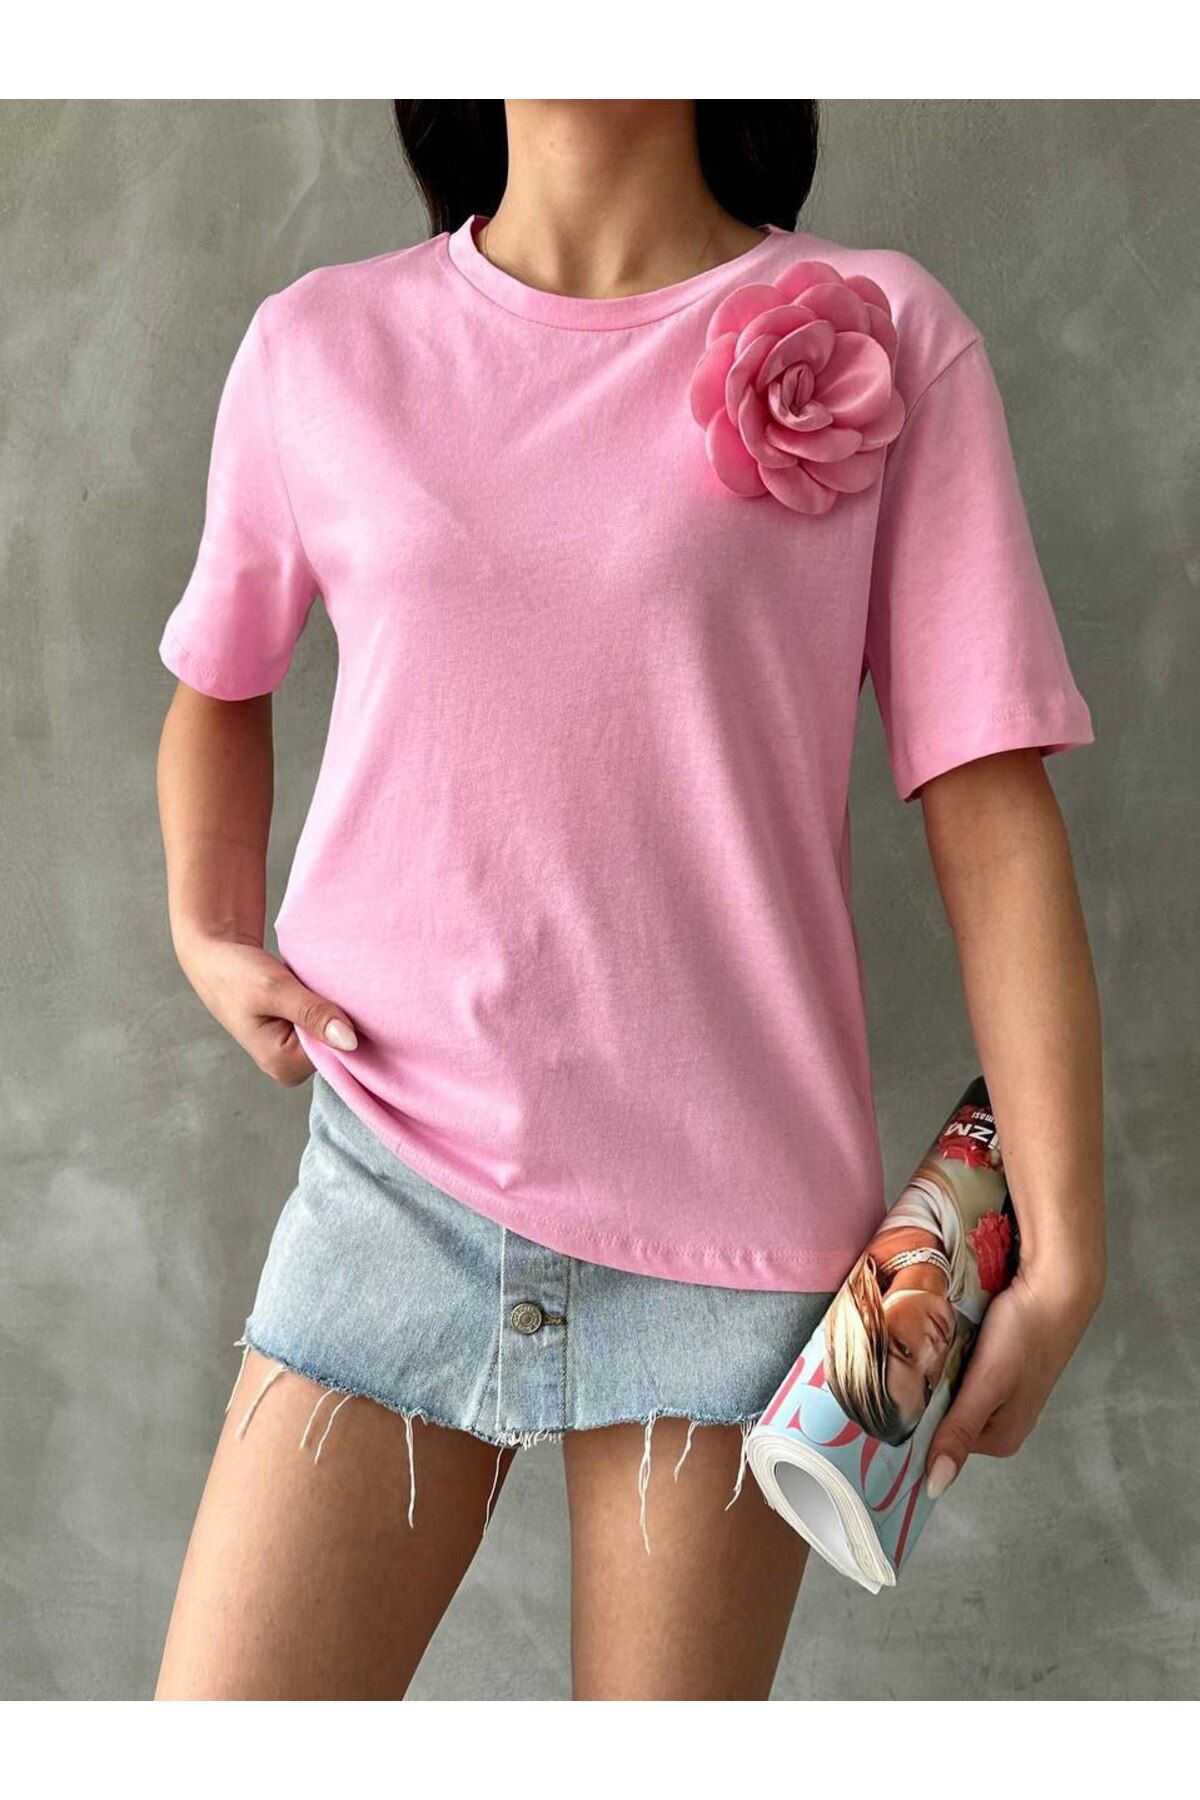 DuSiMoDa Kadın Pembe T-shirt Renkli Gül Aksesuarlı Kısa Kollu Standart Beden